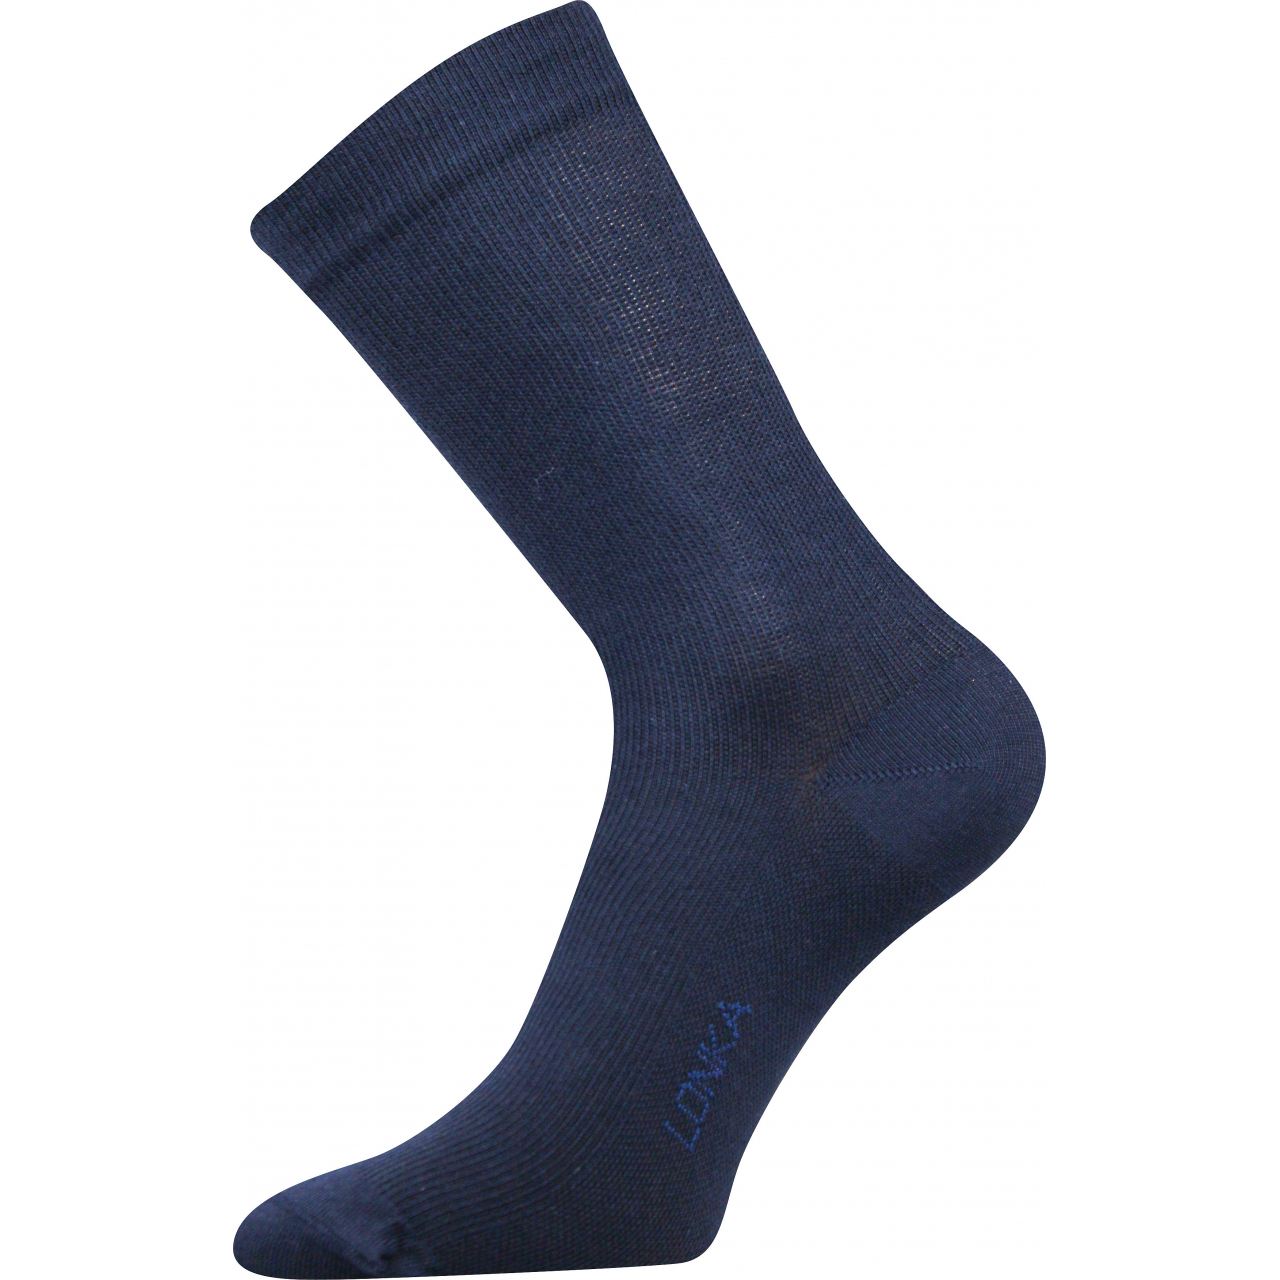 Ponožky kompresní Lonka Kooper - tmavě modré, 35-38